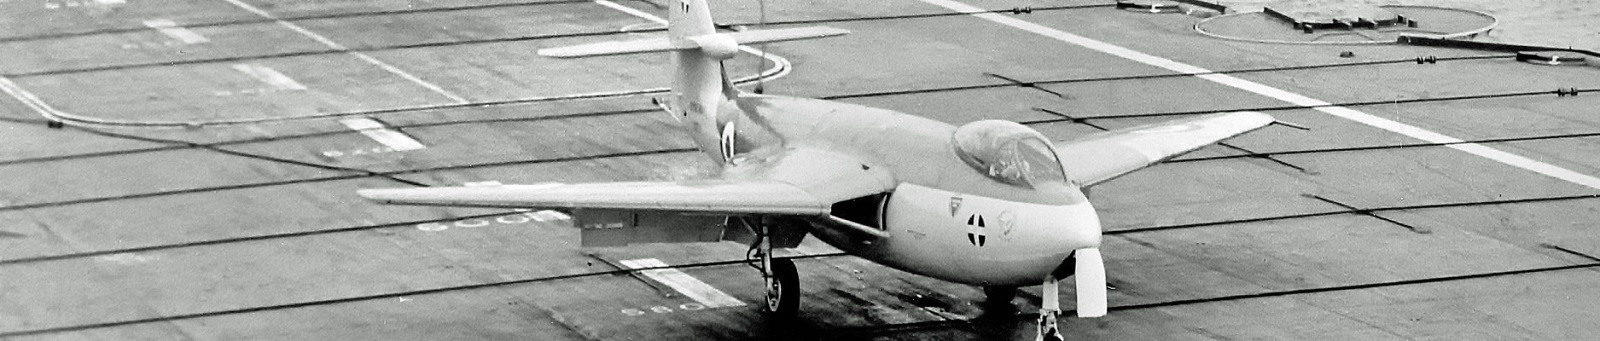 Hawker P1052